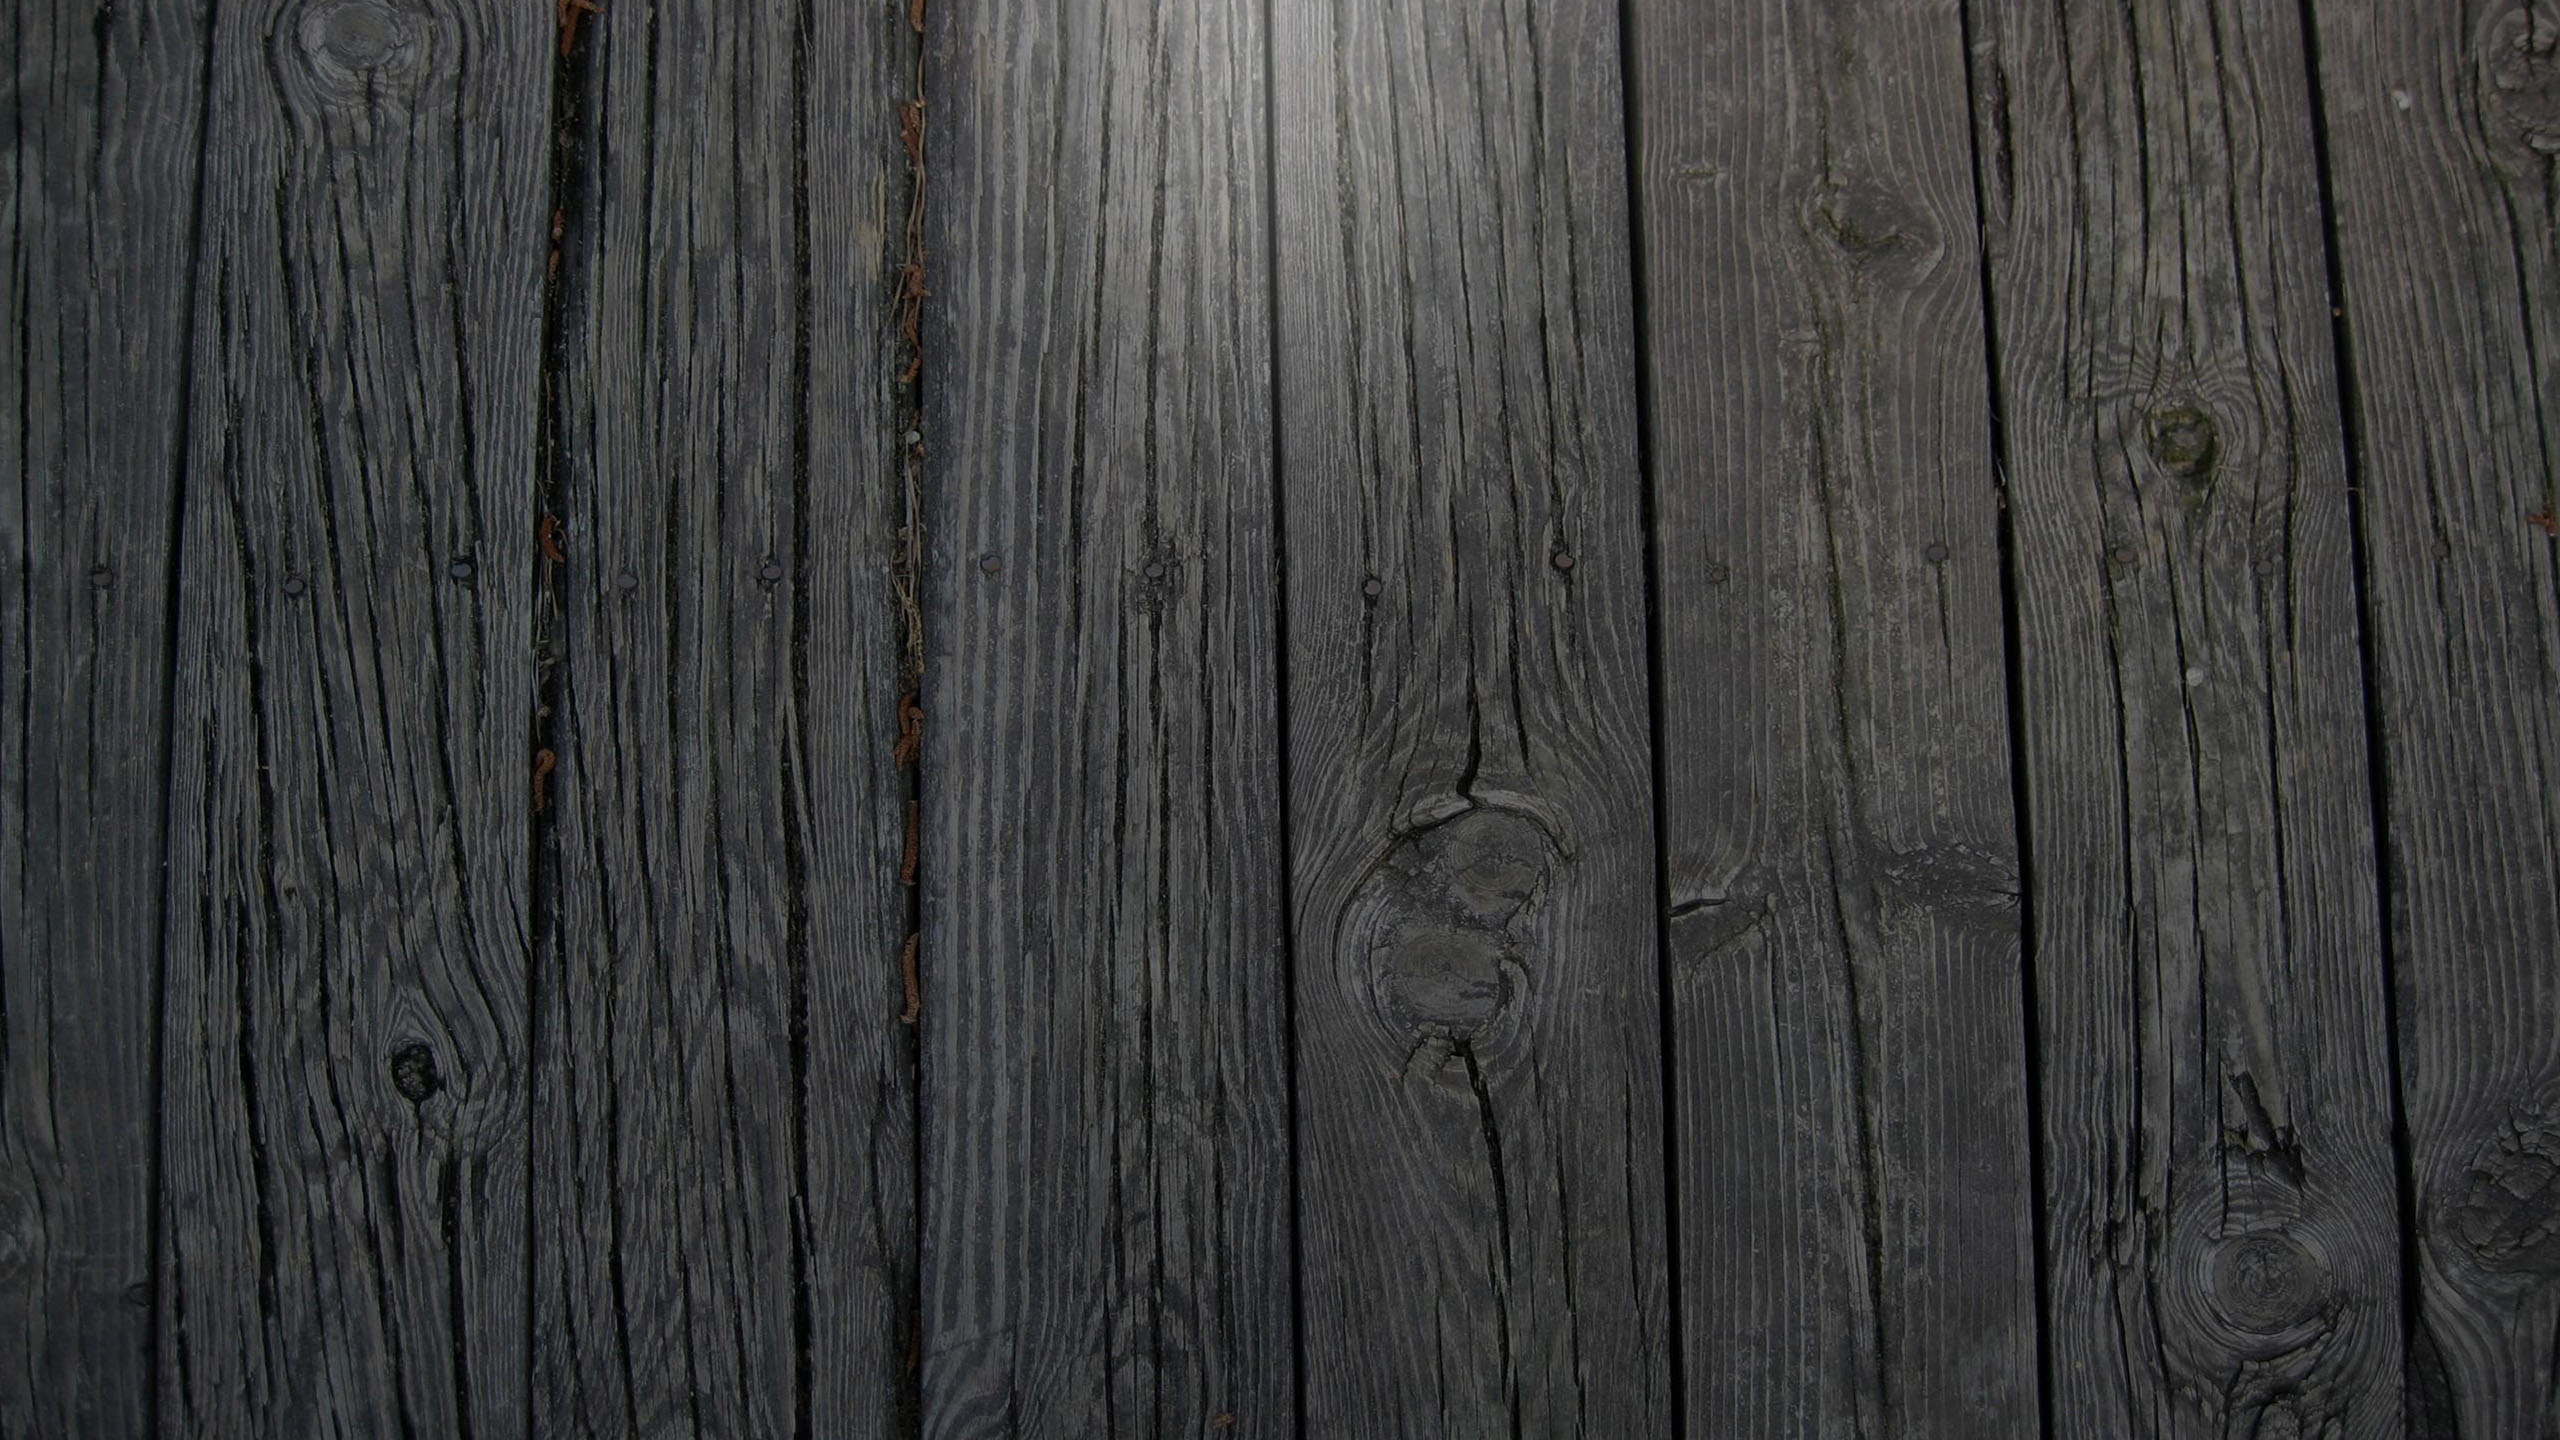 Hình nền gỗ xám đẹp